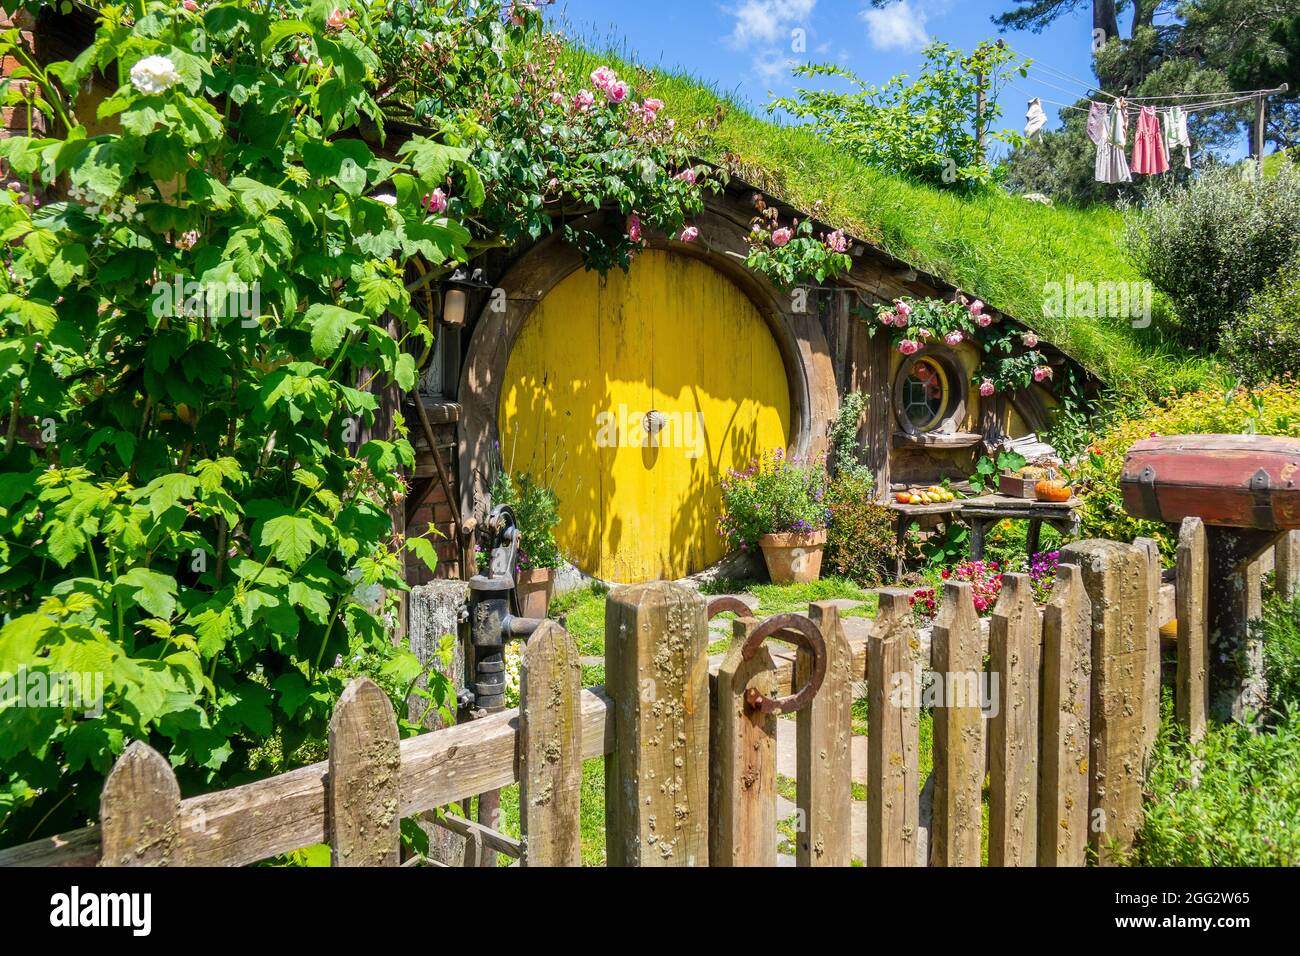 Yellow Door Hobbit Hole Home On the Hobbiton Movie Set pour le Seigneur des anneaux Movie Trilogy à Matamata Nouvelle-Zélande UNE attraction touristique populaire Banque D'Images